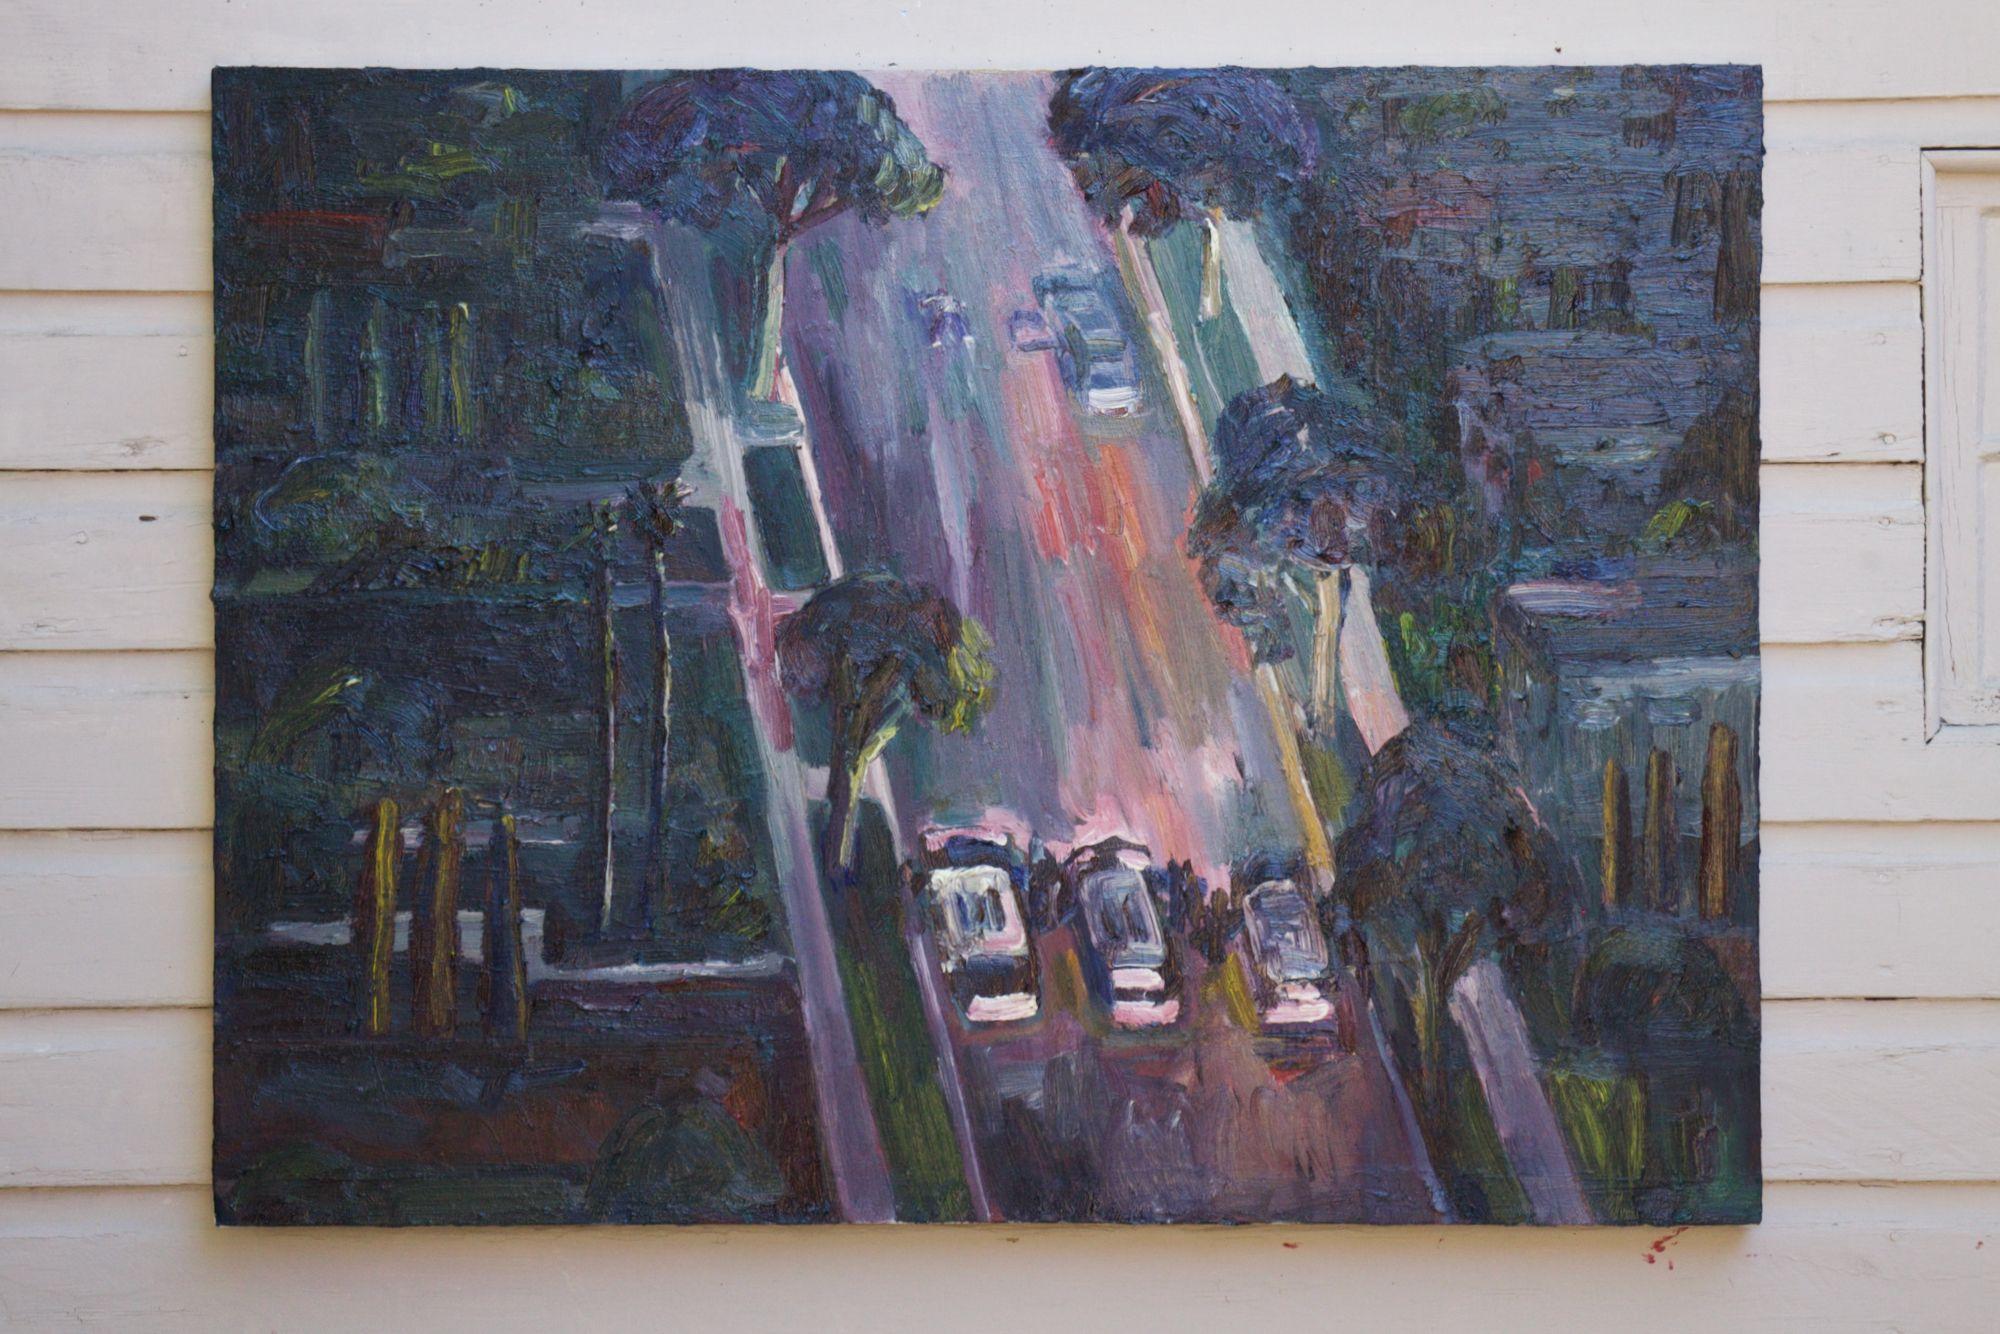 Fin d'une poursuite policière, Peinture, Huile sur toile - Pop Art Painting par John Kilduff